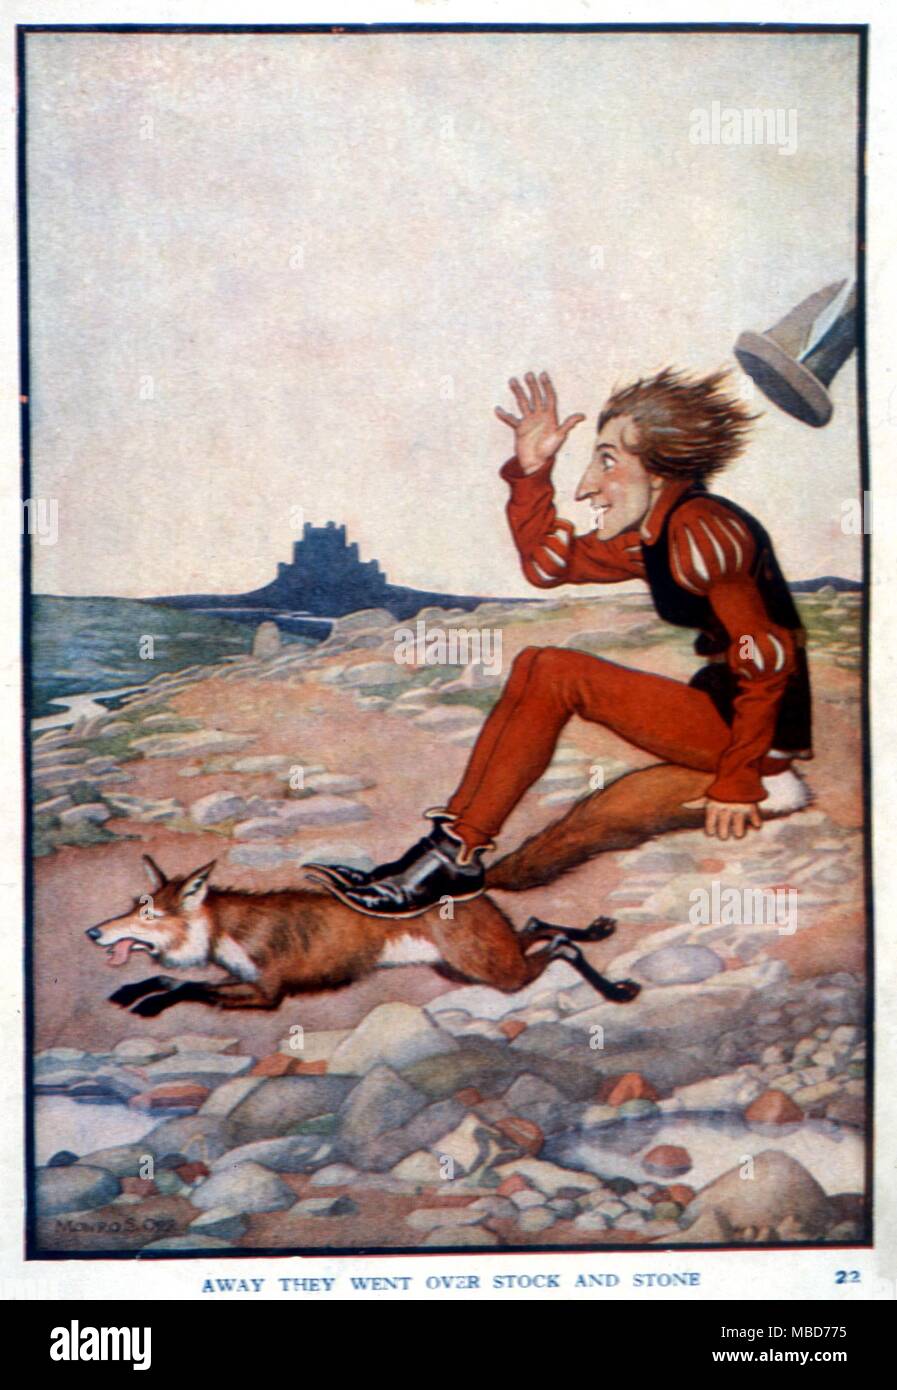 Märchen - Grimm - Illustration von Monro S. Orr für die Märchen der Gebrüder Grimm - Nd aber C. 1920 - Weg sie gingen über Stock und Stein - Von Der goldene Vogel Stockfoto